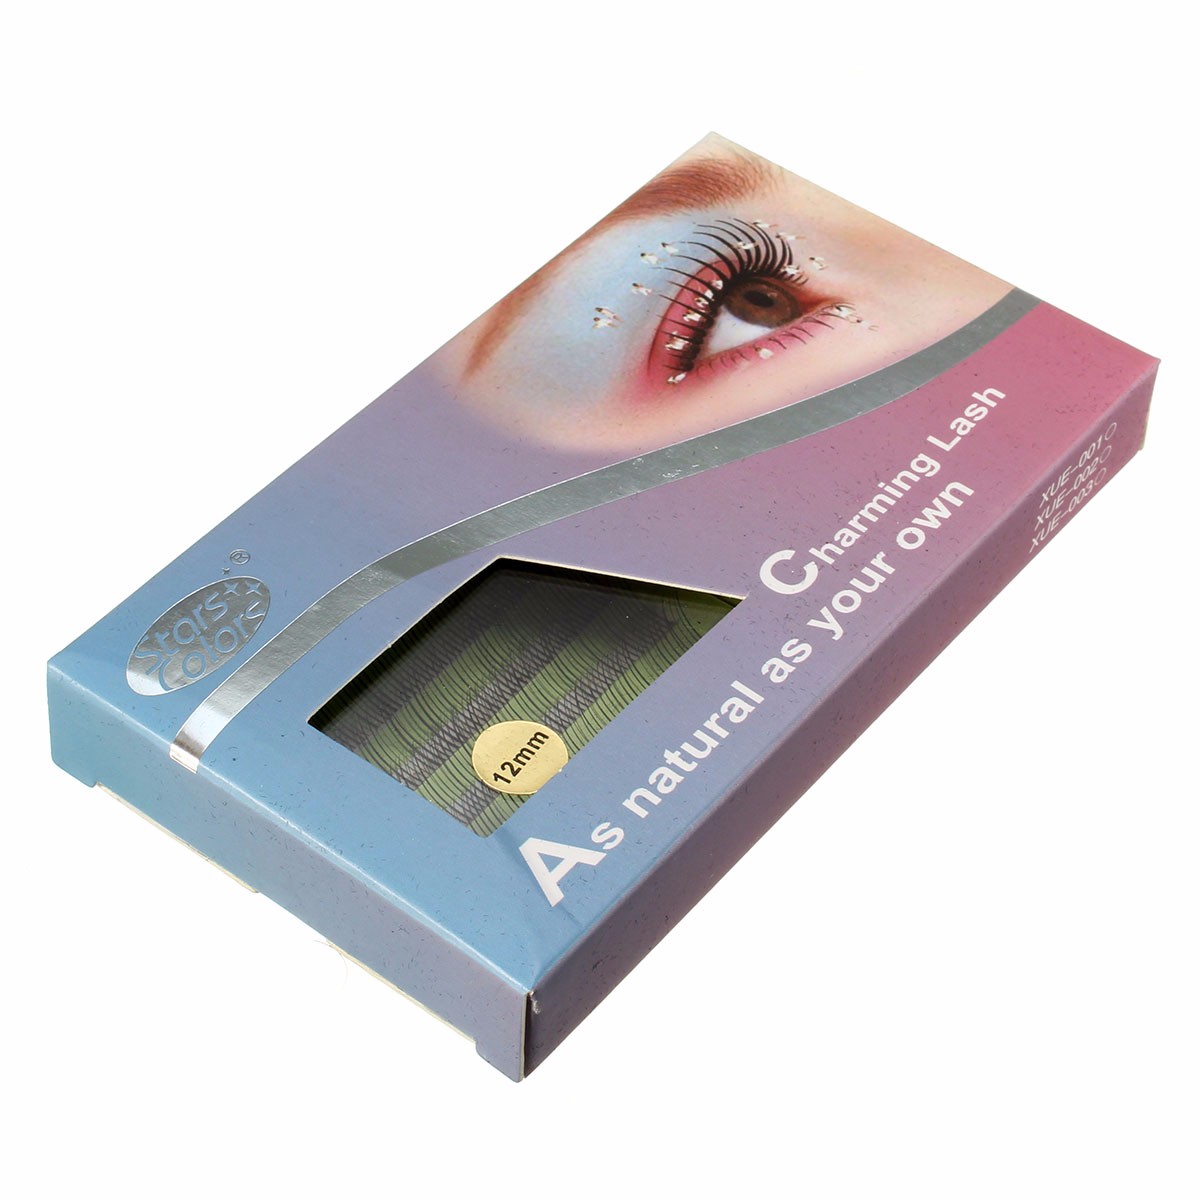 Professional False Extension Eyelash Glue Brush Full Kit Set with Case 